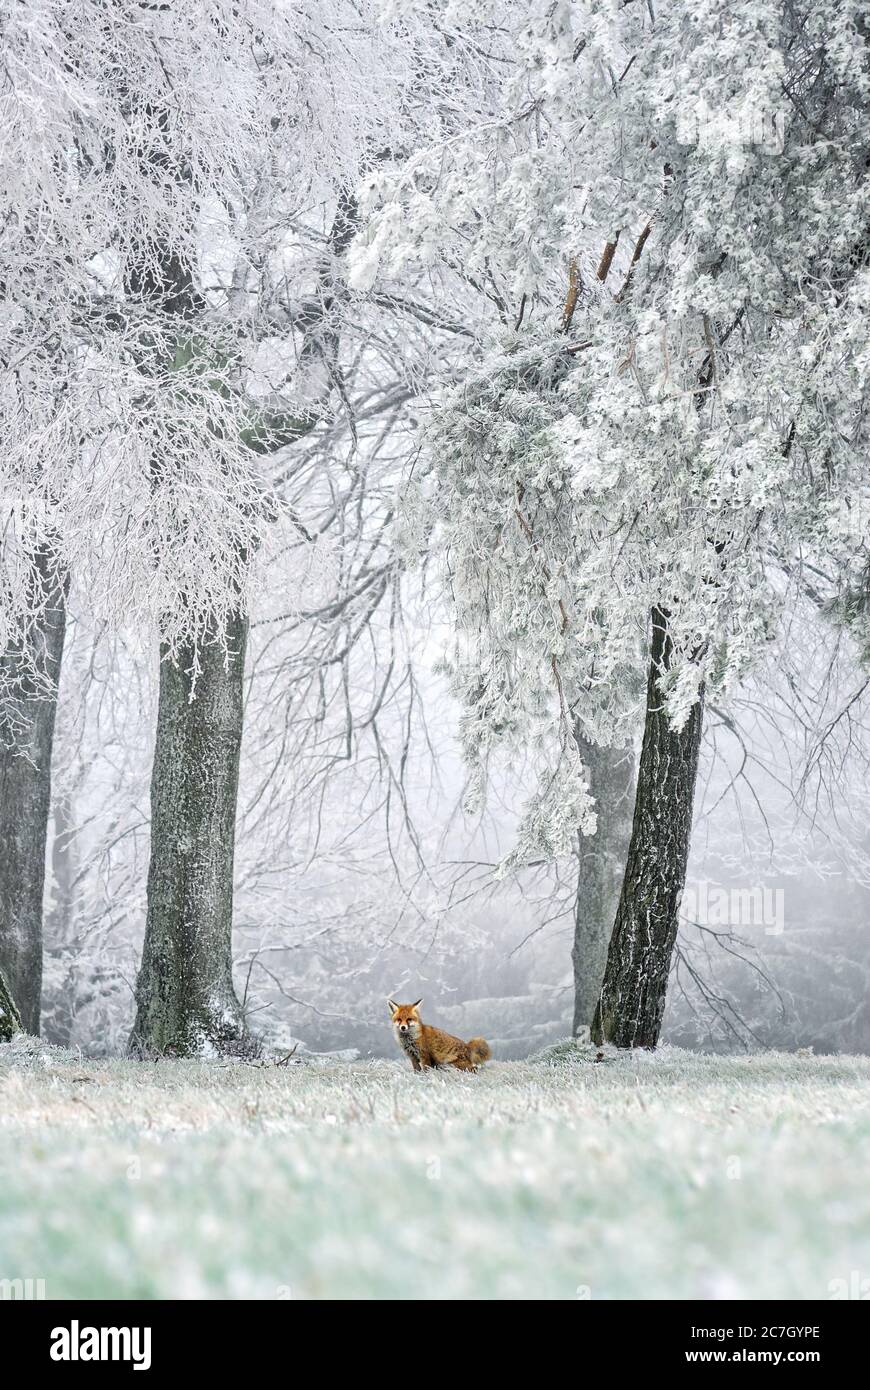 Renard rouge - Vulpes vulpes, magnifiques carnivores en hiver des forêts européennes, République tchèque. Banque D'Images